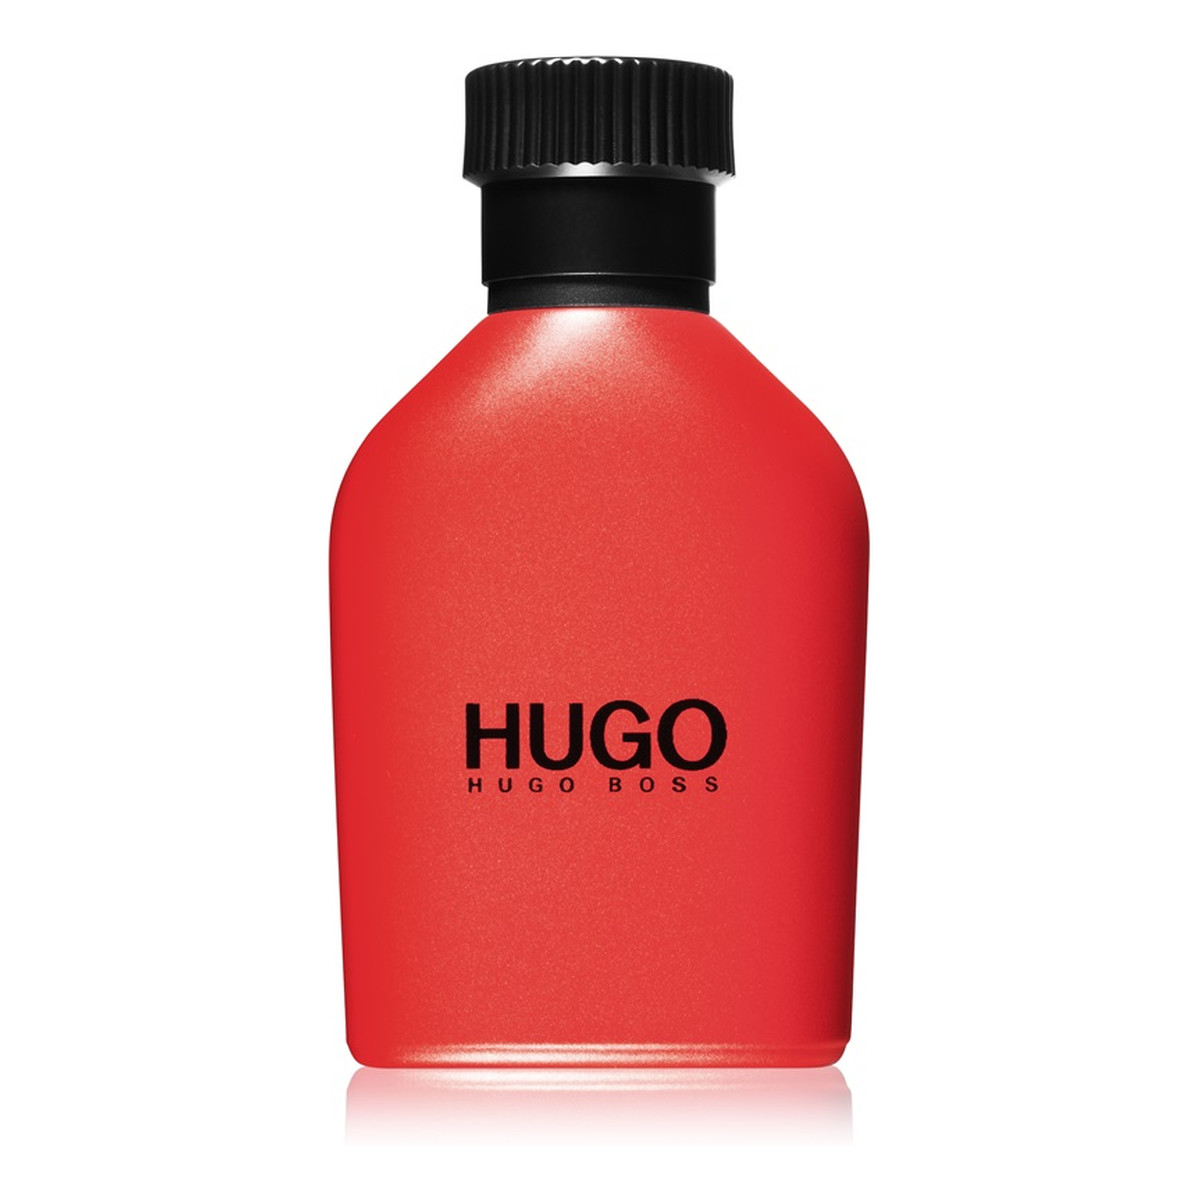 Hugo Boss Red woda toaletowa dla mężczyzn 40ml